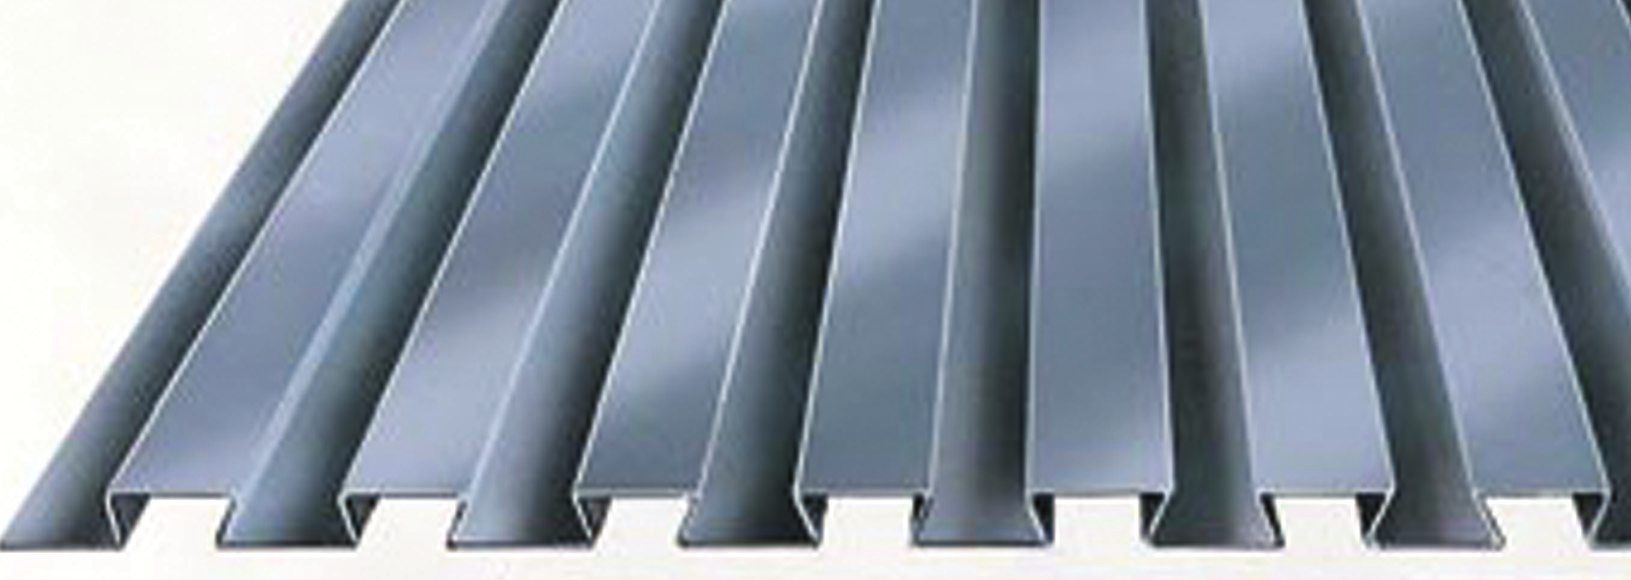 Produktet LEWIS -plater er svalehaleformede, valsede forskalingsplater av galvanisert stål.